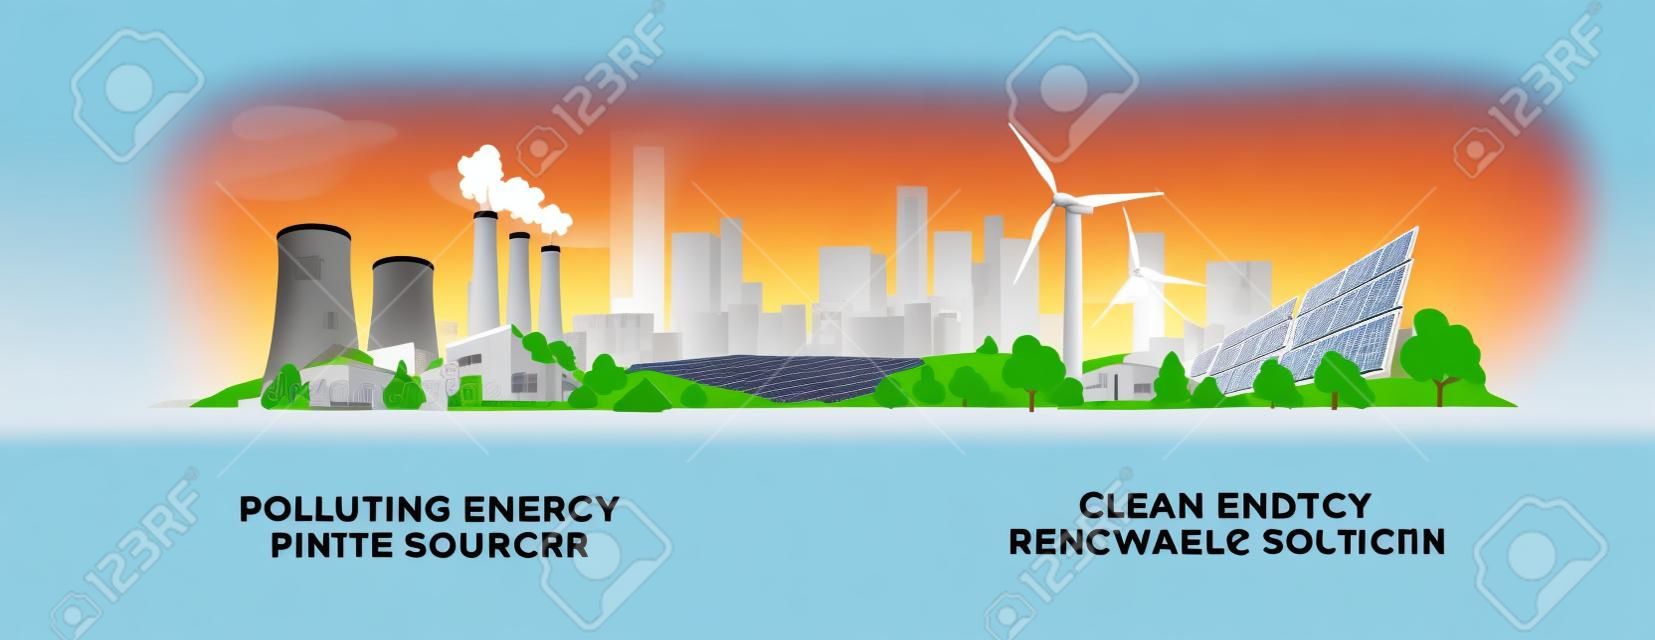 Vektorillustration, die saubere und verunreinigende Stromerzeugungsproduktion zeigt. Verschmutzung fossiler thermischer Kohle- und Kernkraftwerke im Vergleich zu sauberen Sonnenkollektoren und erneuerbaren Windenergieanlagen.